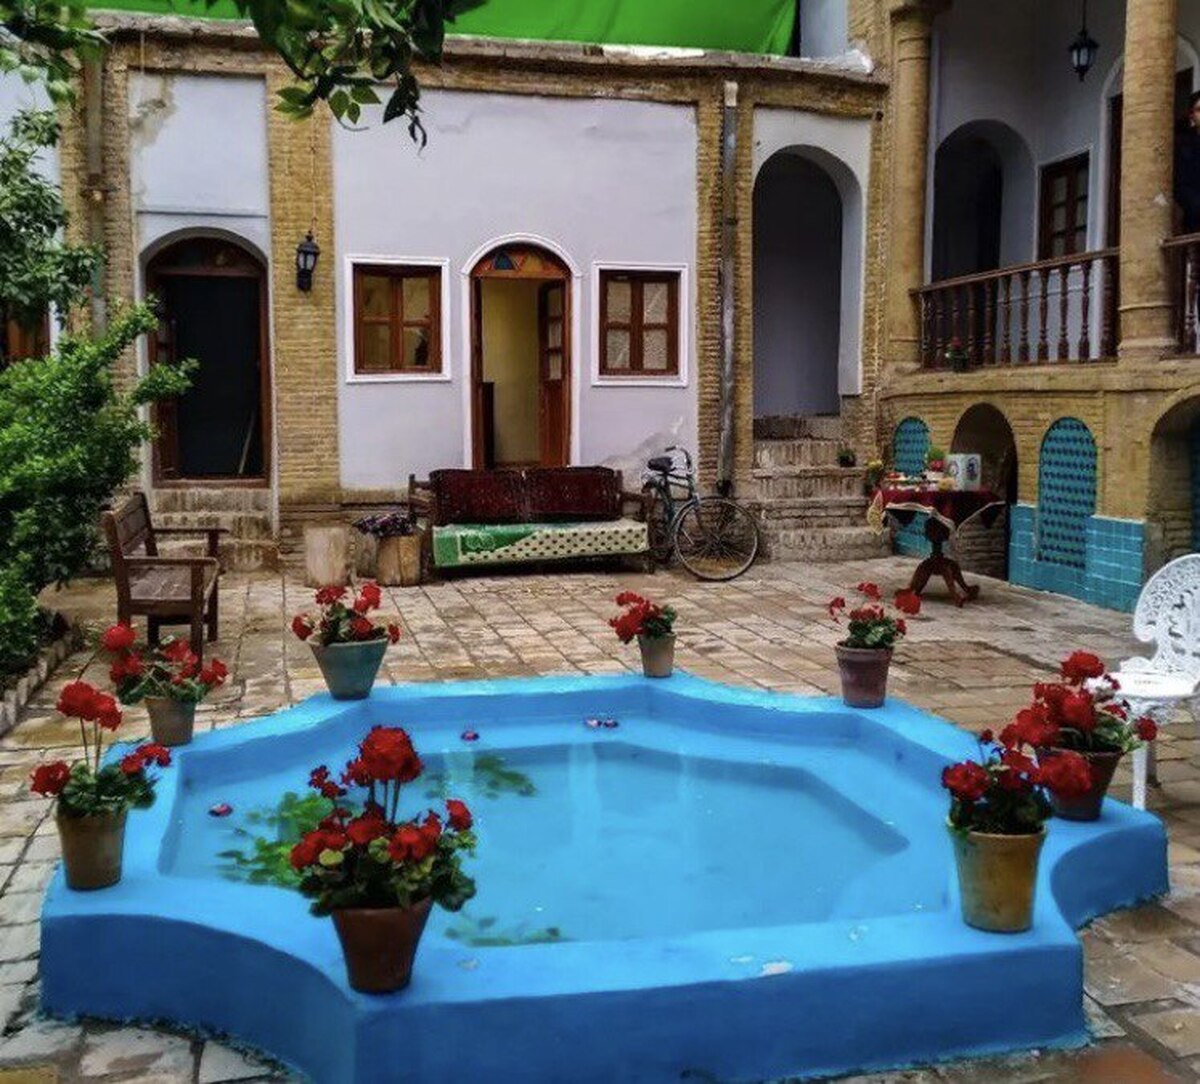 این خانه قاجاری، لوکیشن محبوب ترین عاشقانه های تاریخی است + عکس